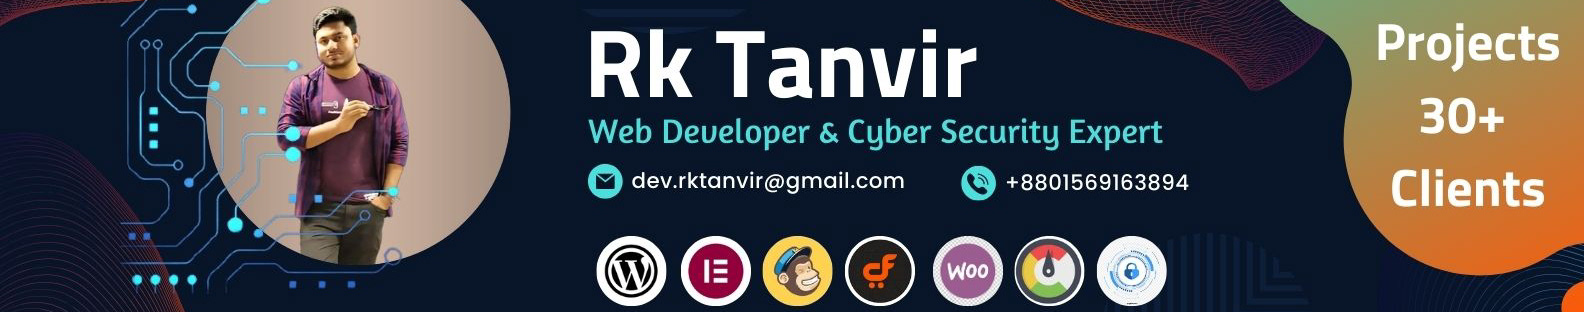 Rk Tanvir's profile banner